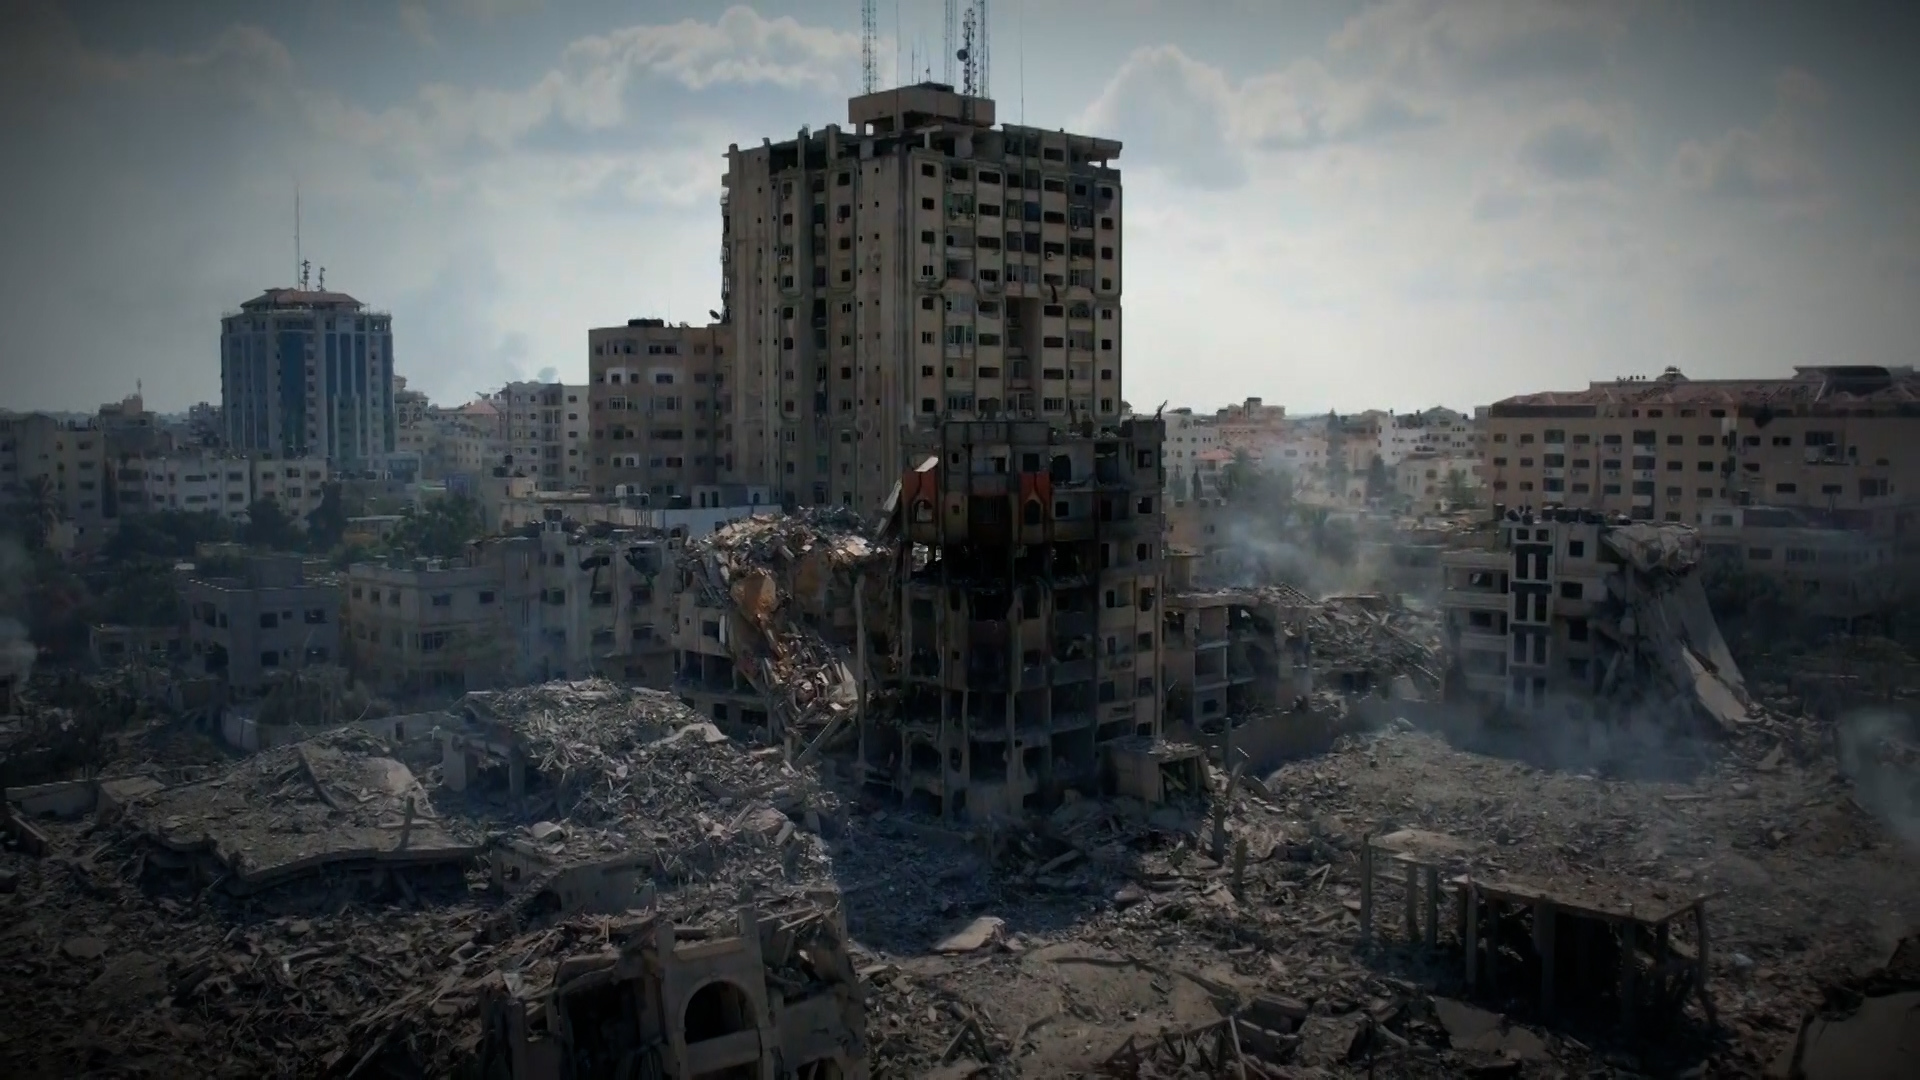 مليون شخص فقدوا منازلهم كليا.. هكذا دمرت إسرائيل قطاع غزة بشكل ممنهج | أخبار – البوكس نيوز